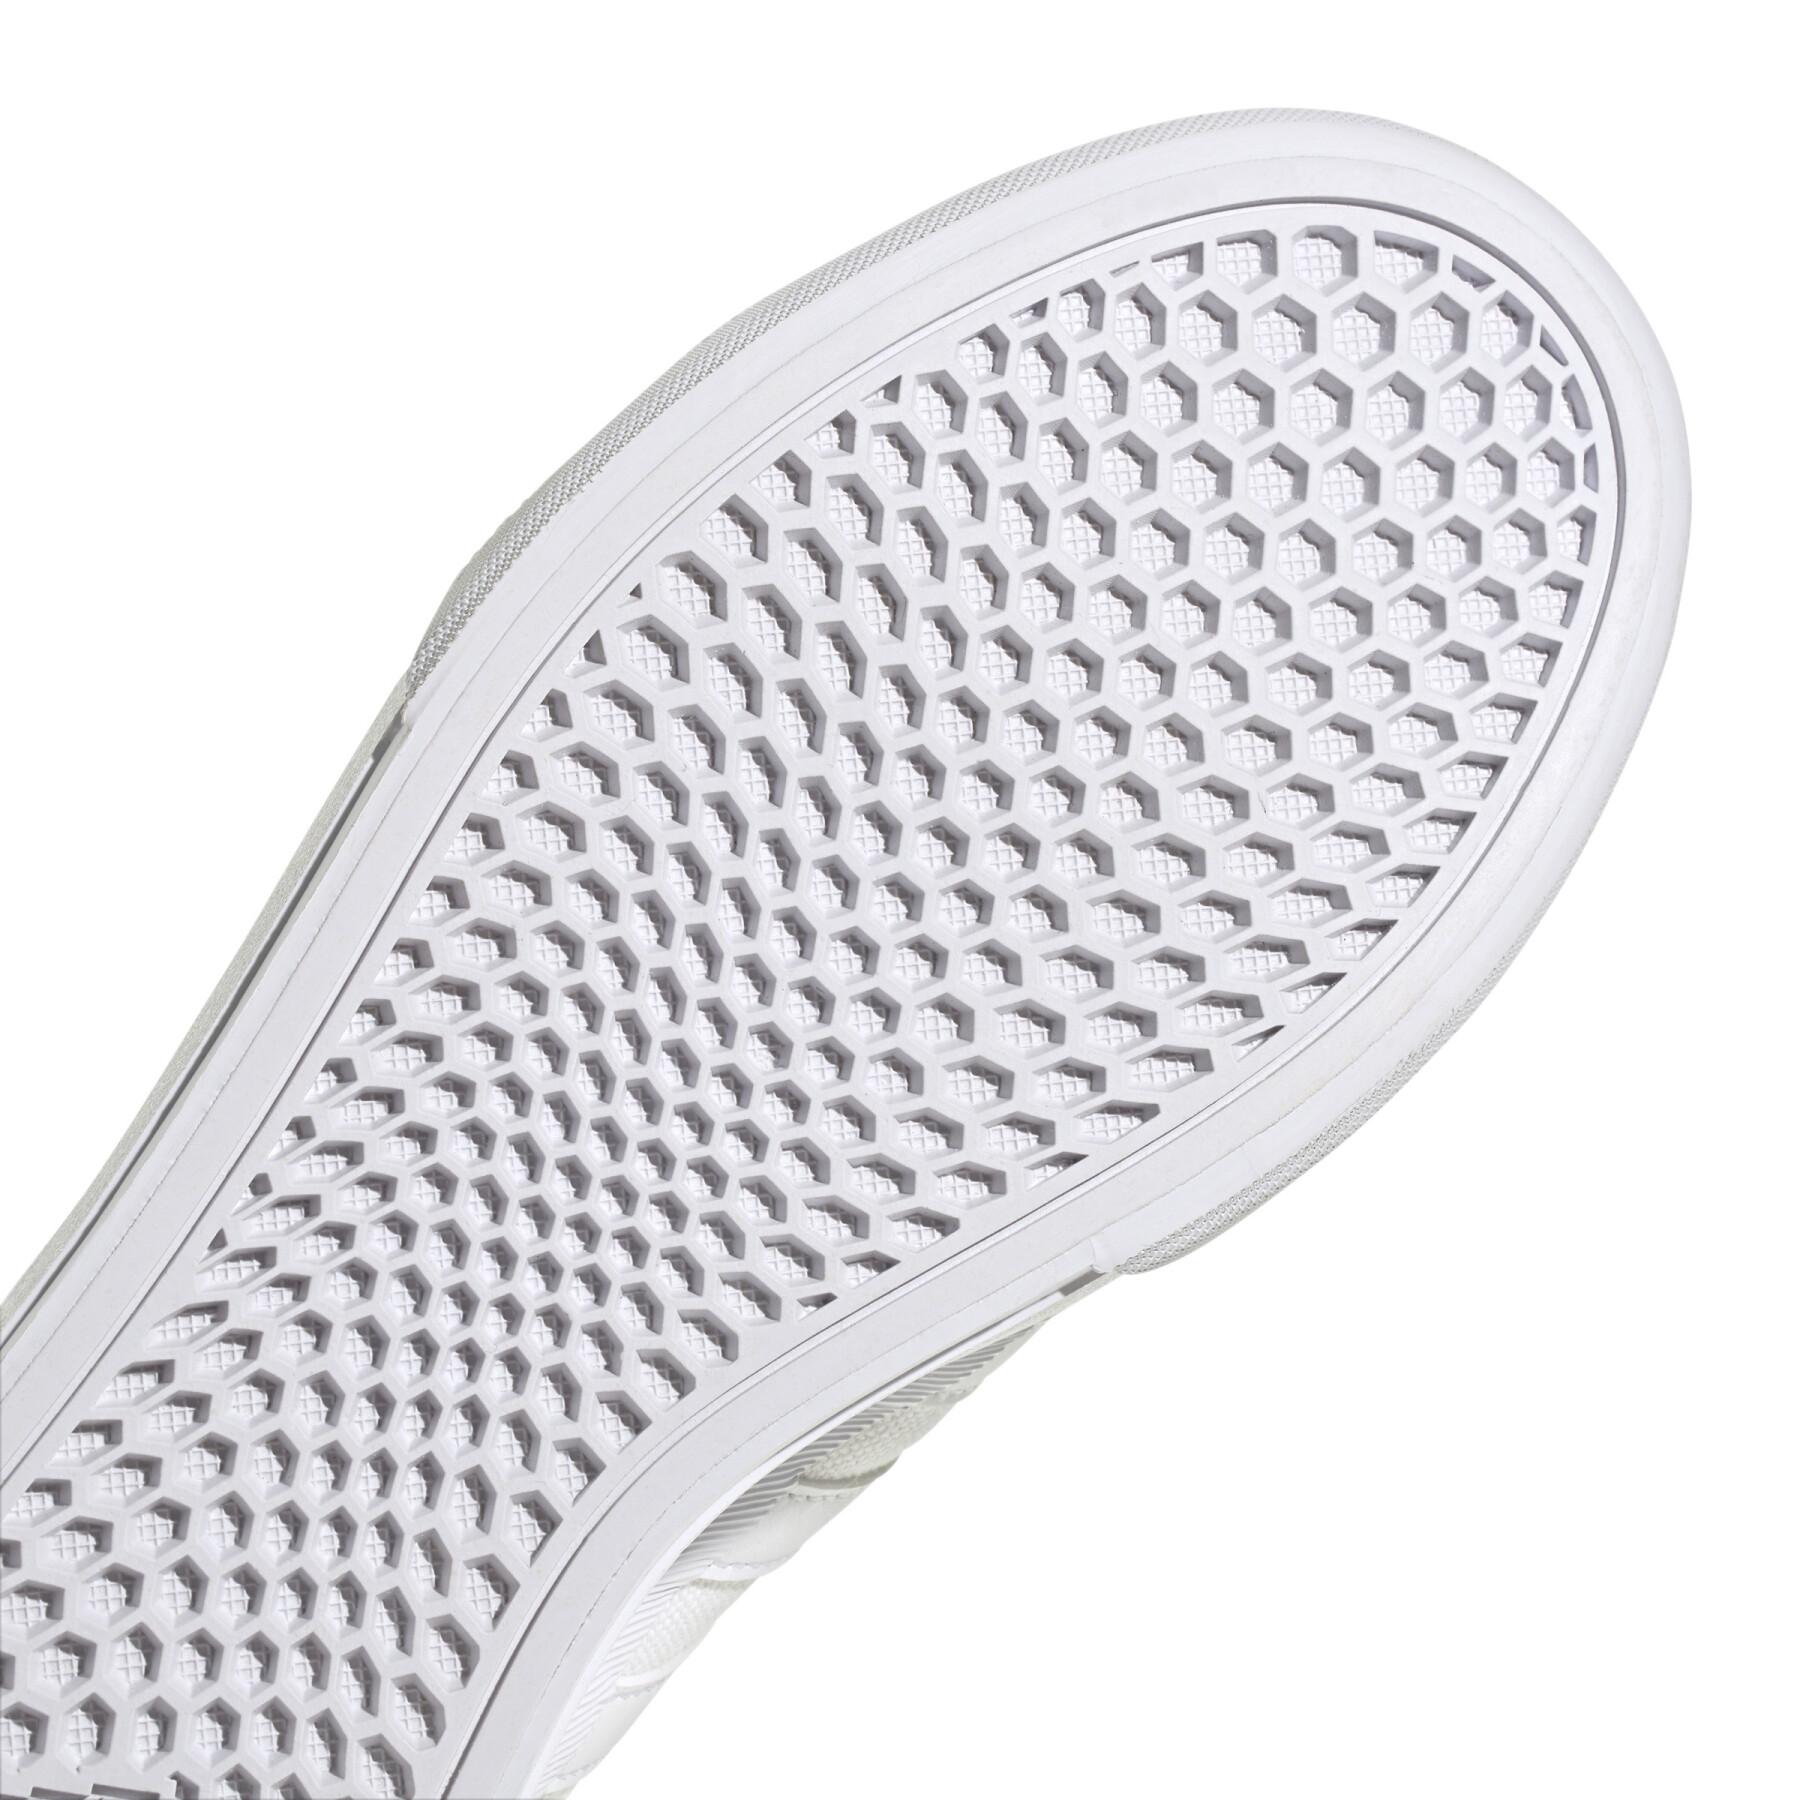 Scarpe da ginnastica da donna adidas Bravada 2.0 Platform